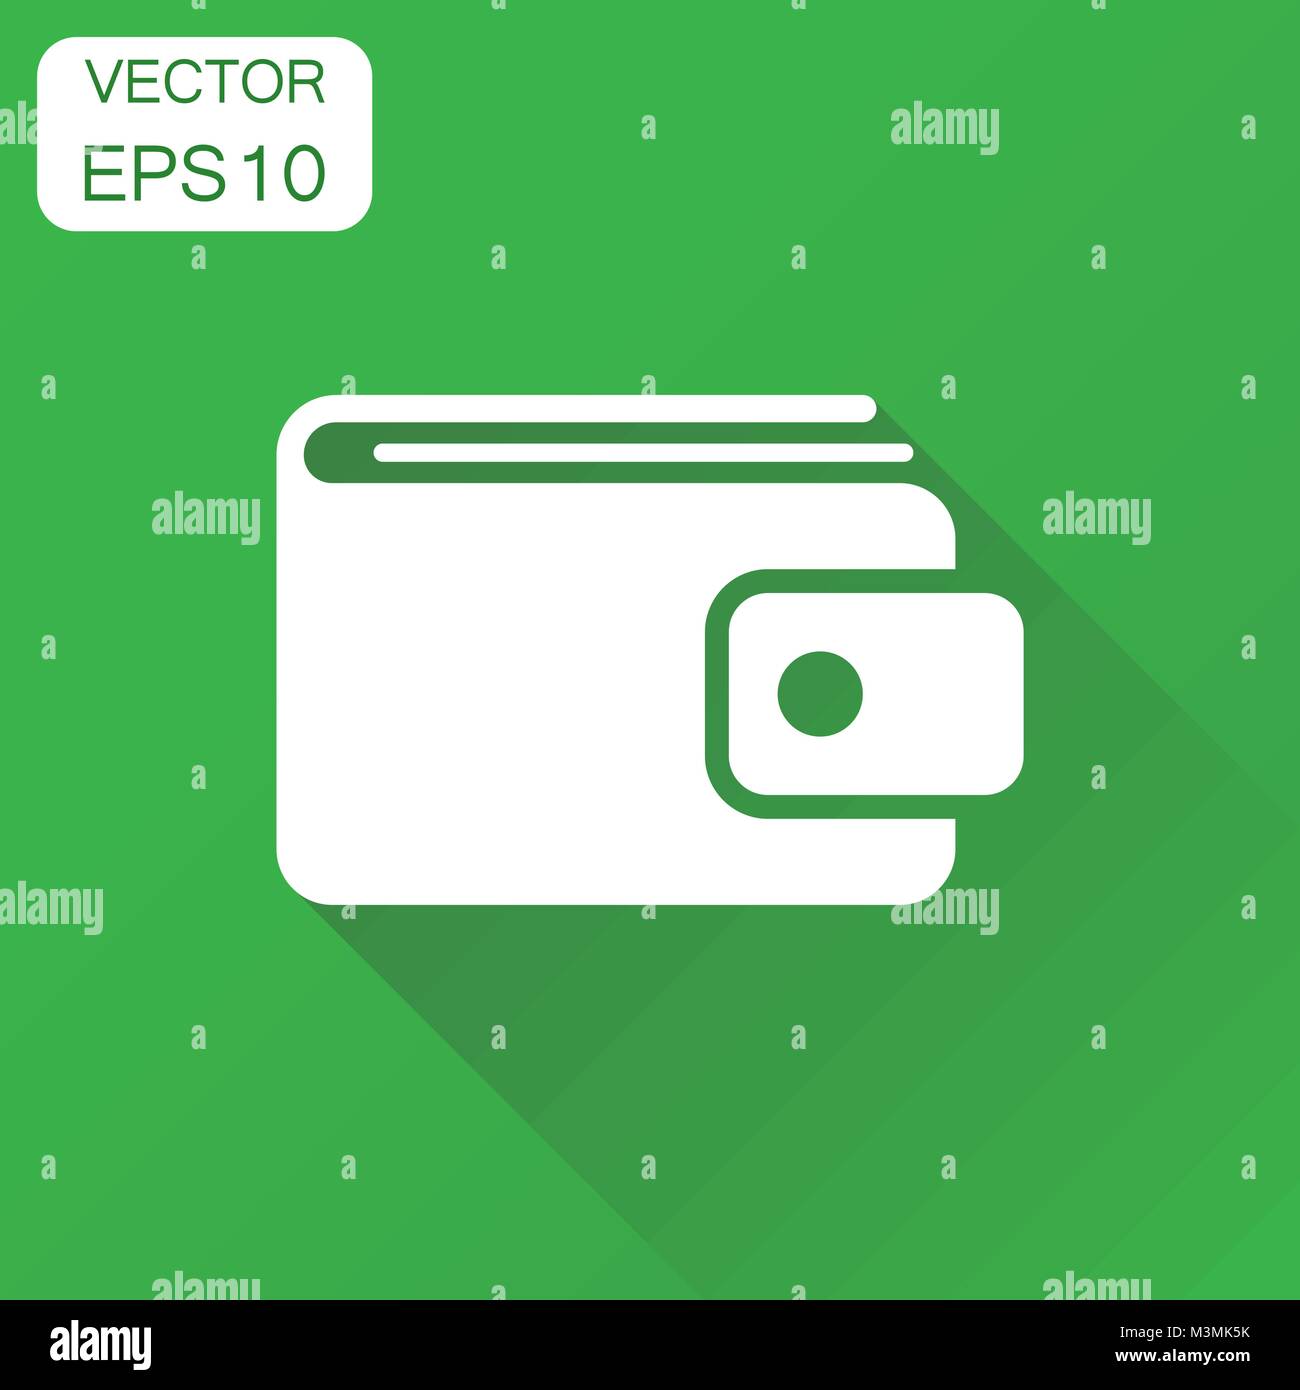 L'icône porte-monnaie. Concept d'affaires bourse d'argent pictogramme.  Vector illustration sur fond vert à l'ombre Image Vectorielle Stock - Alamy